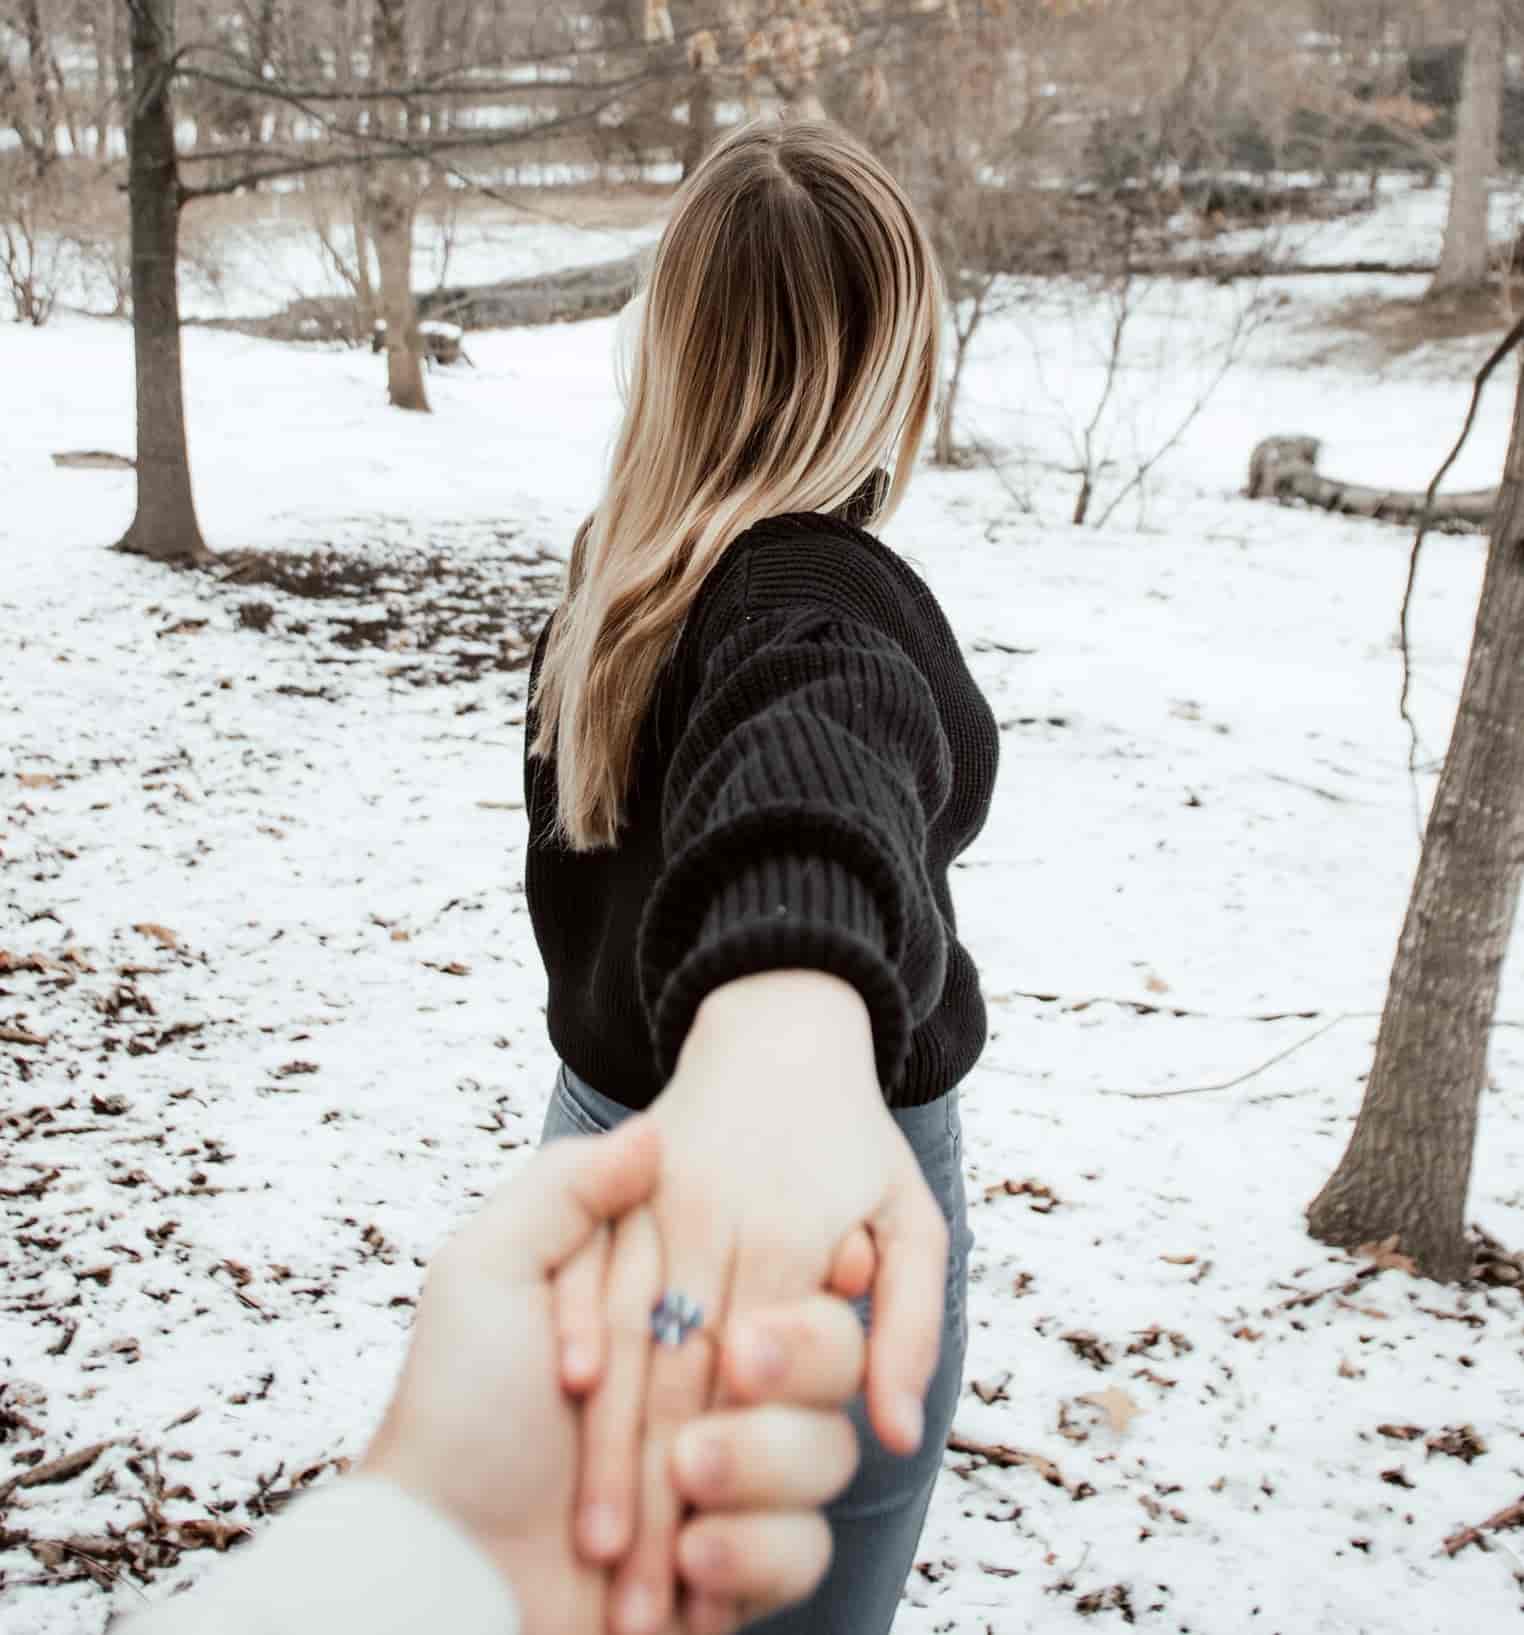 Una joven toma de la mano y guía a su enamorado - foto de Cam Ferland